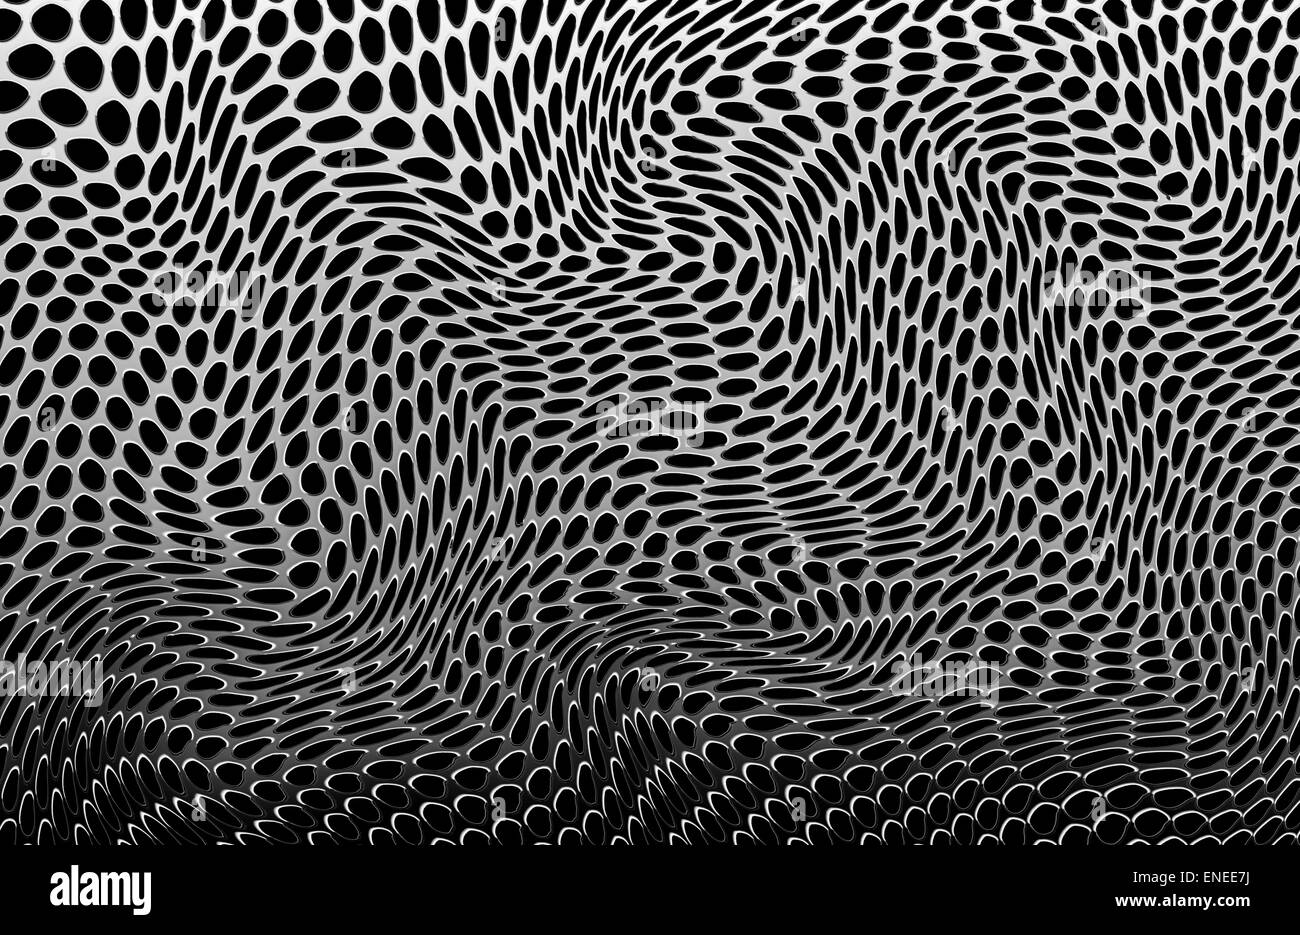 Illustration eines Blattes aus verzerrten metallischen Löchern, verdreht und gebogen in einem abstrakten Muster, um einen komplexen verformenden Zufallseffekt zu bilden. Stockfoto